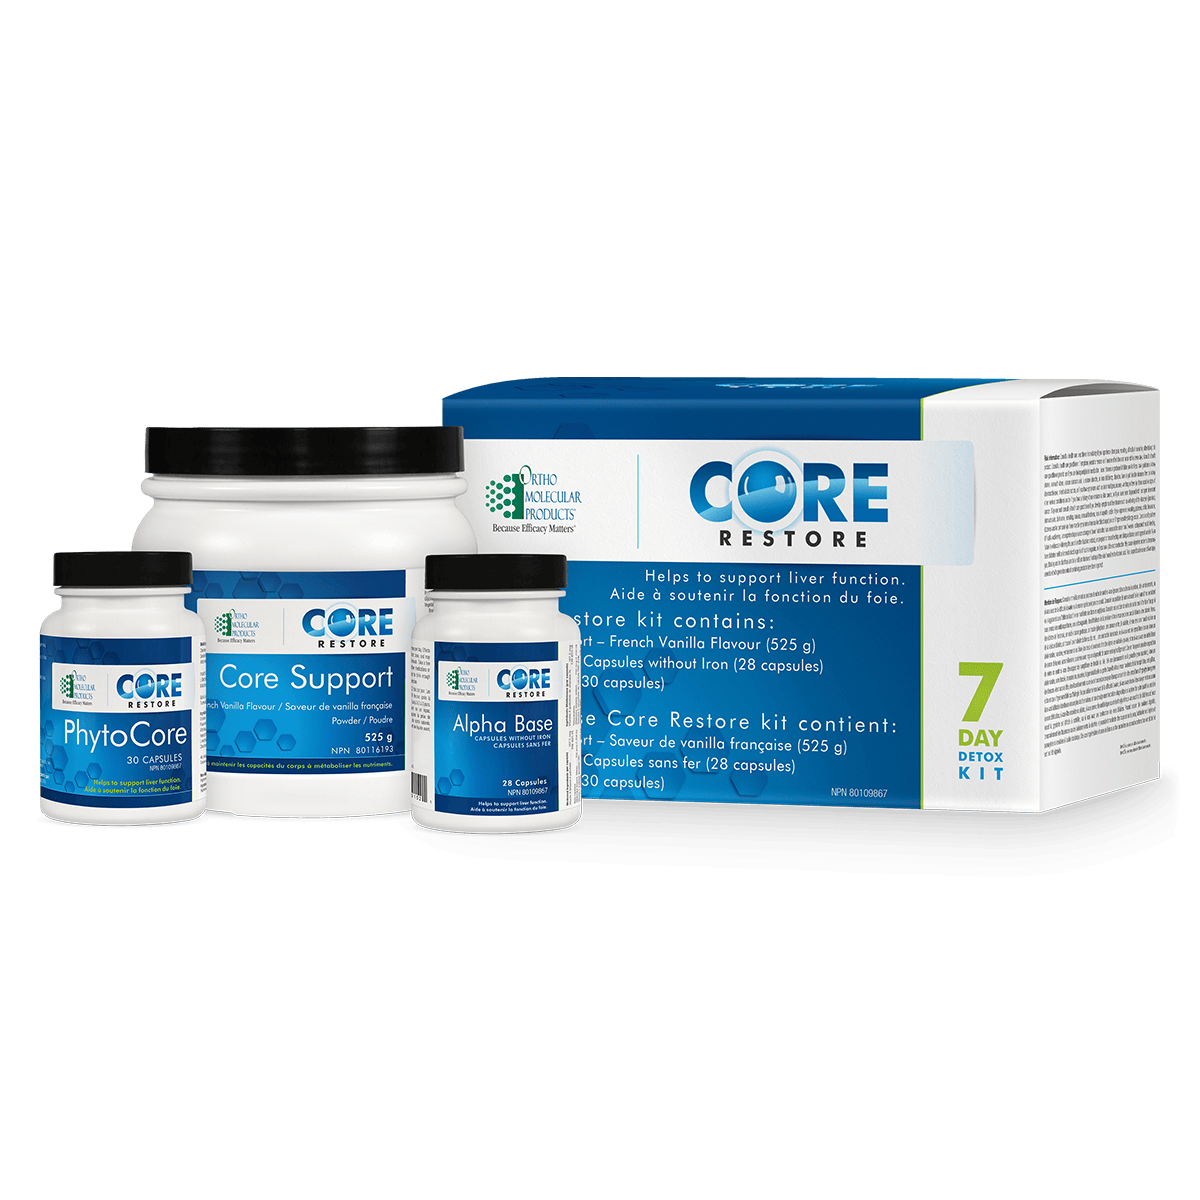 Core Restore 7 Day Kit (Vanilla detox kit)